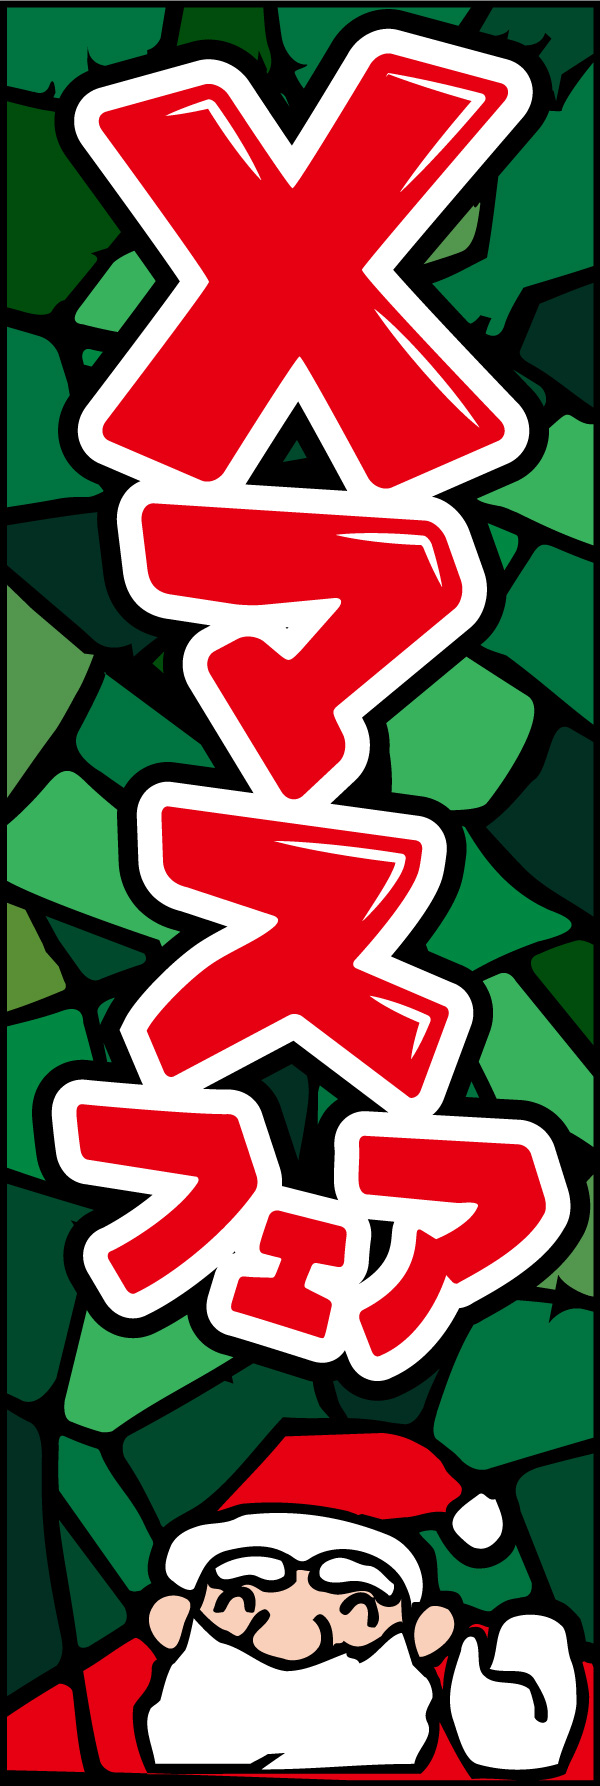 クリスマスフェア 12 「Xマスフェア」の幟です。派手でポップなデザインにしました。(Y.M)